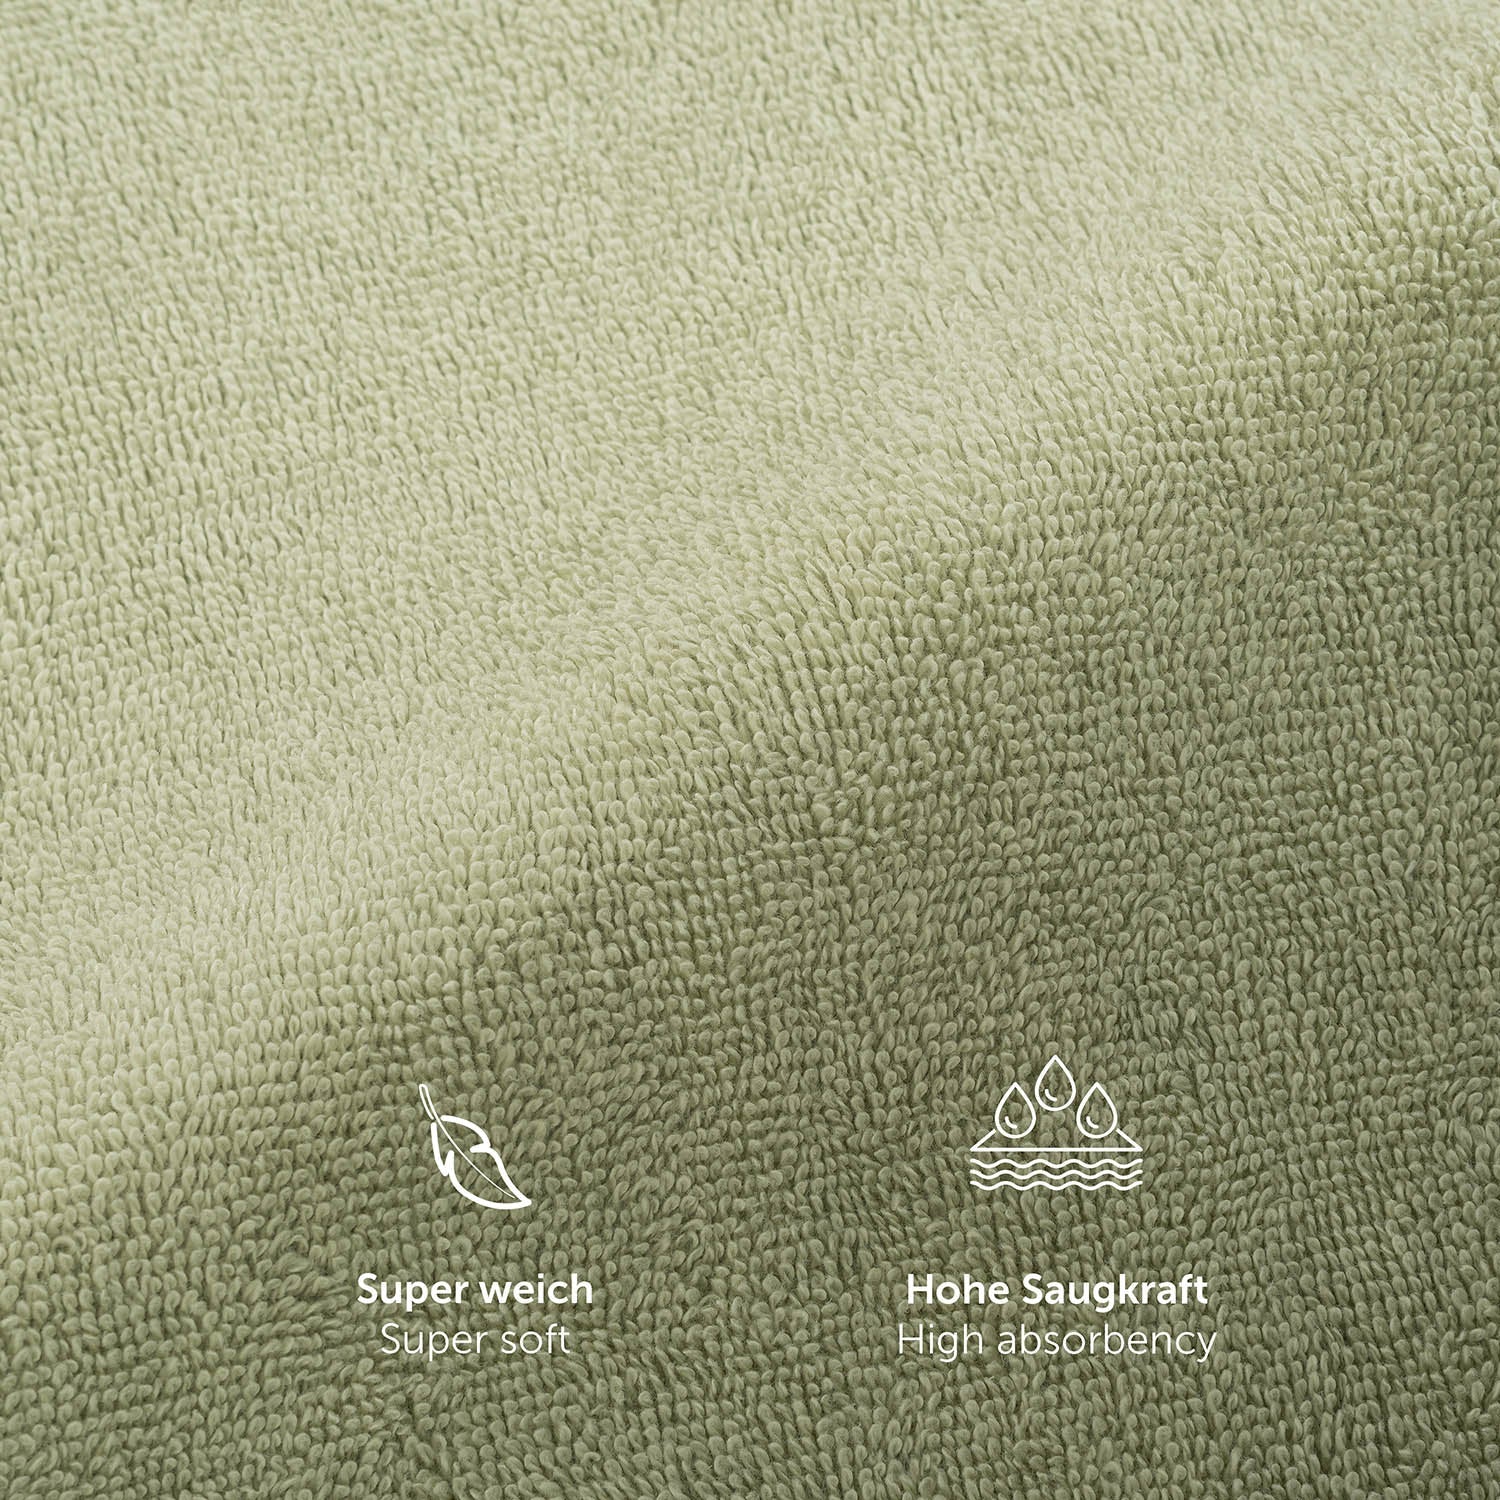 Texturausschnitt eines Handtuchs mit Eigenschaften Super weich und Hohe Saugkraft in weißer Schrift